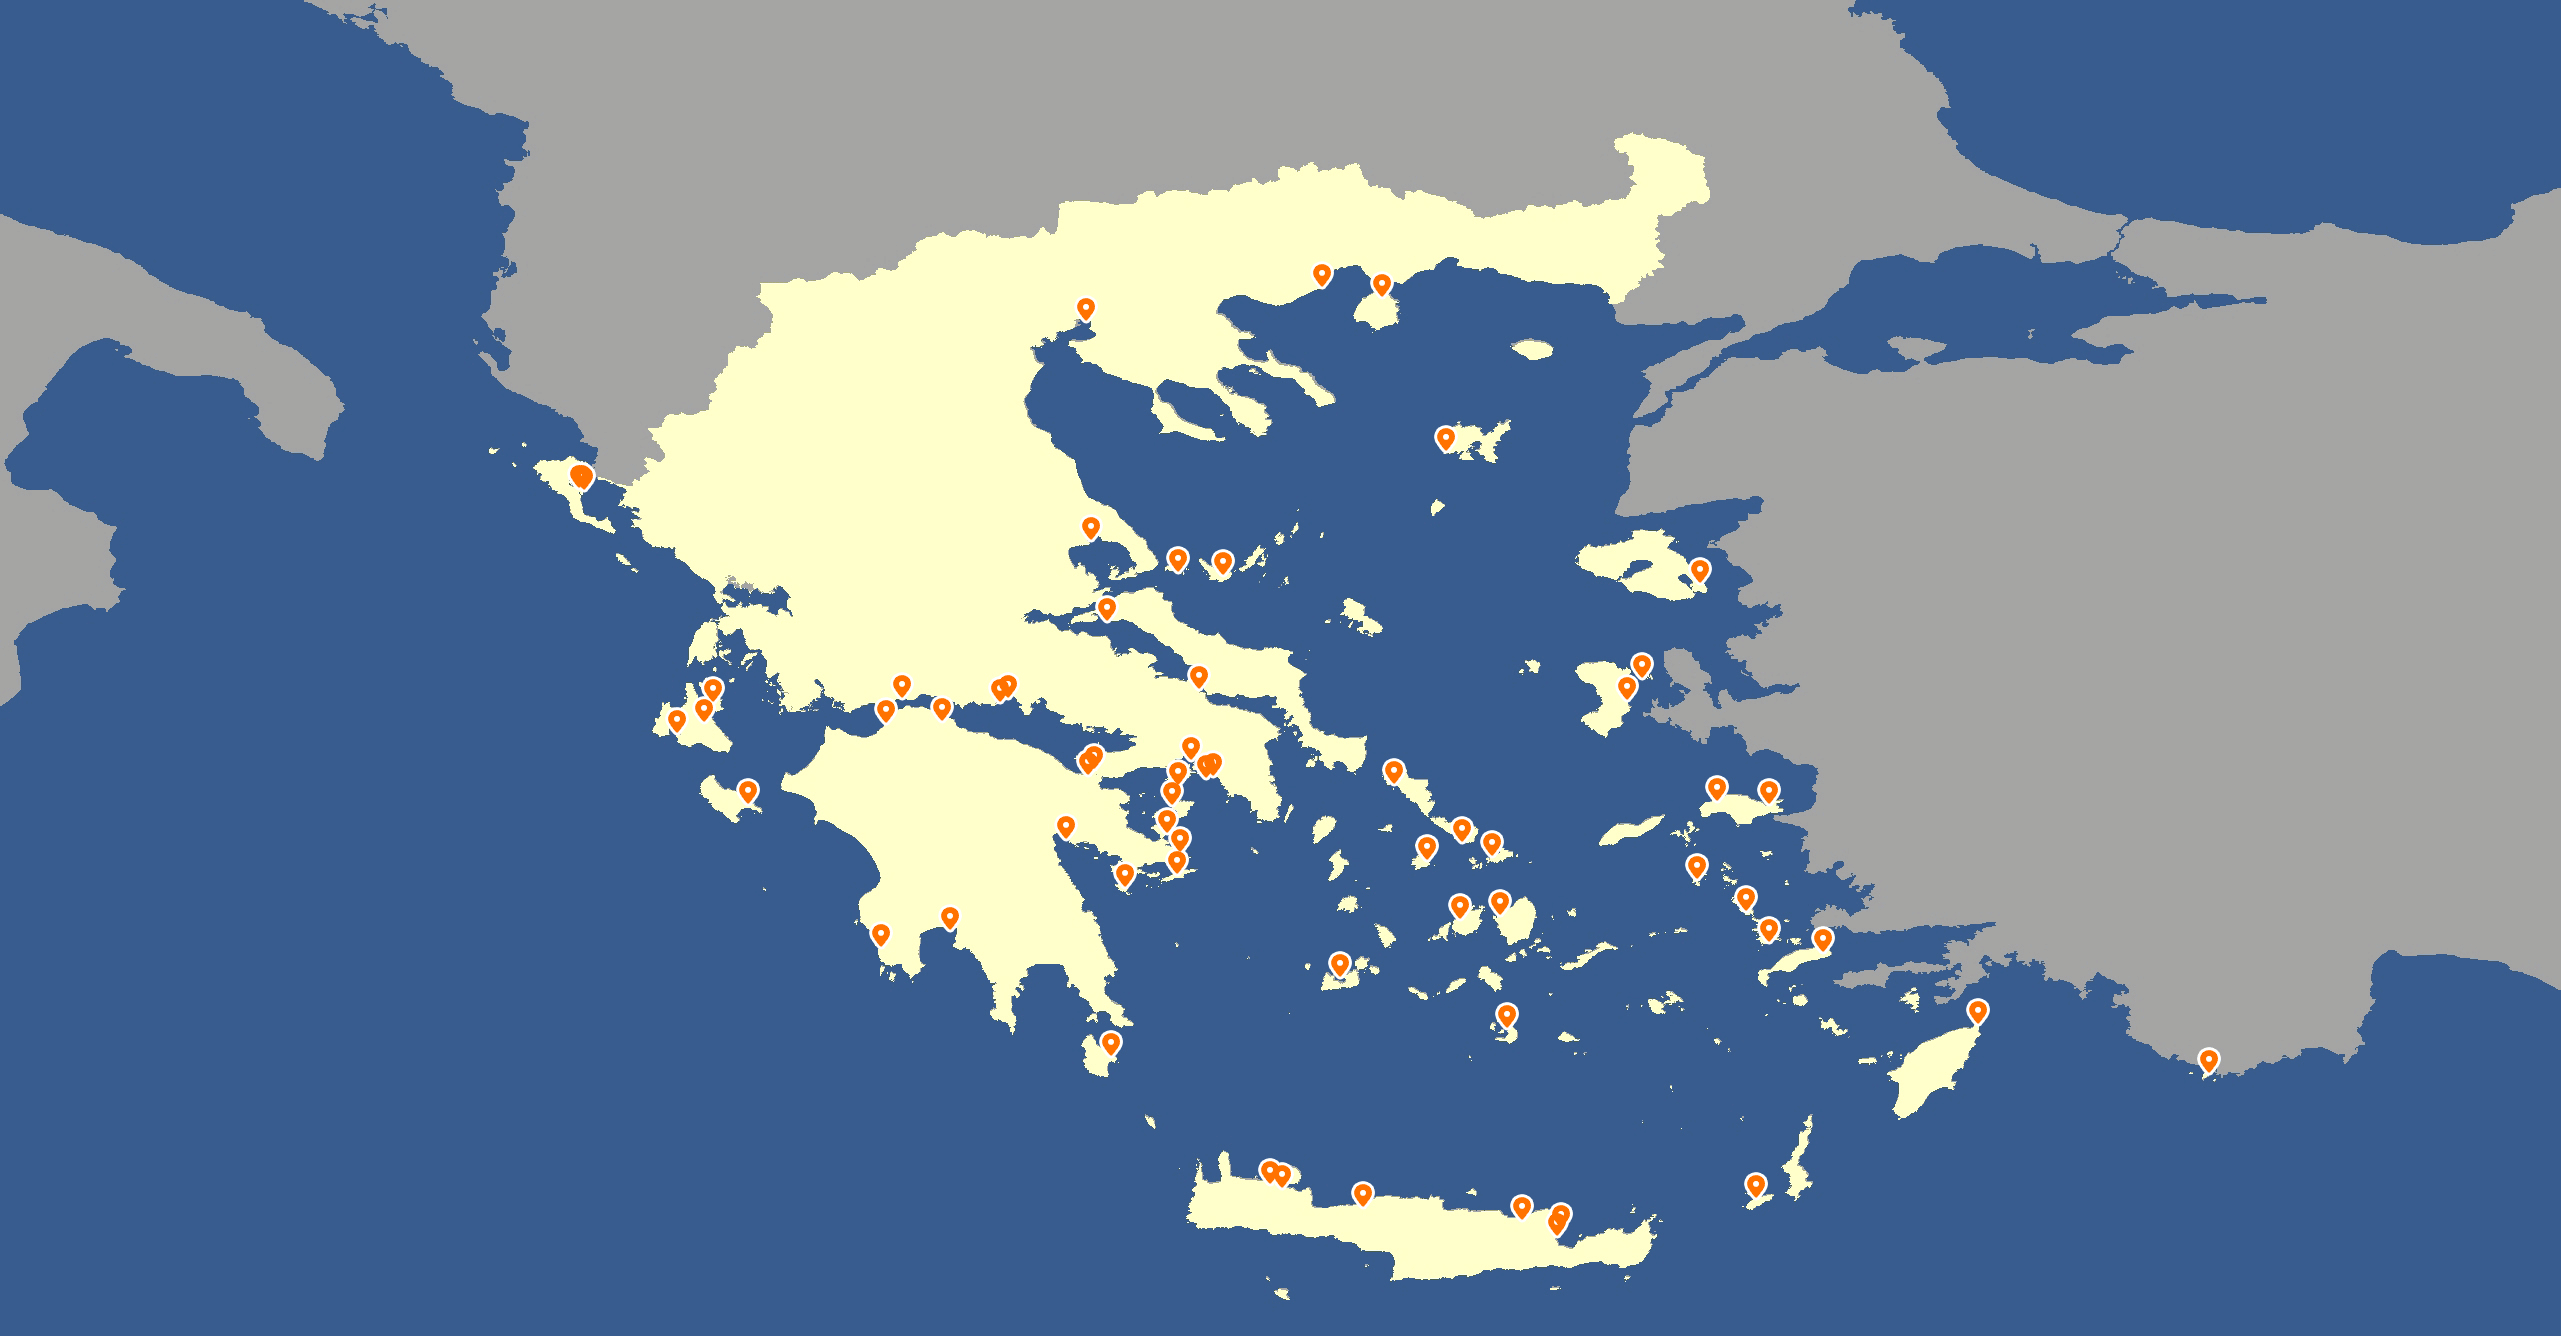 Mytilene